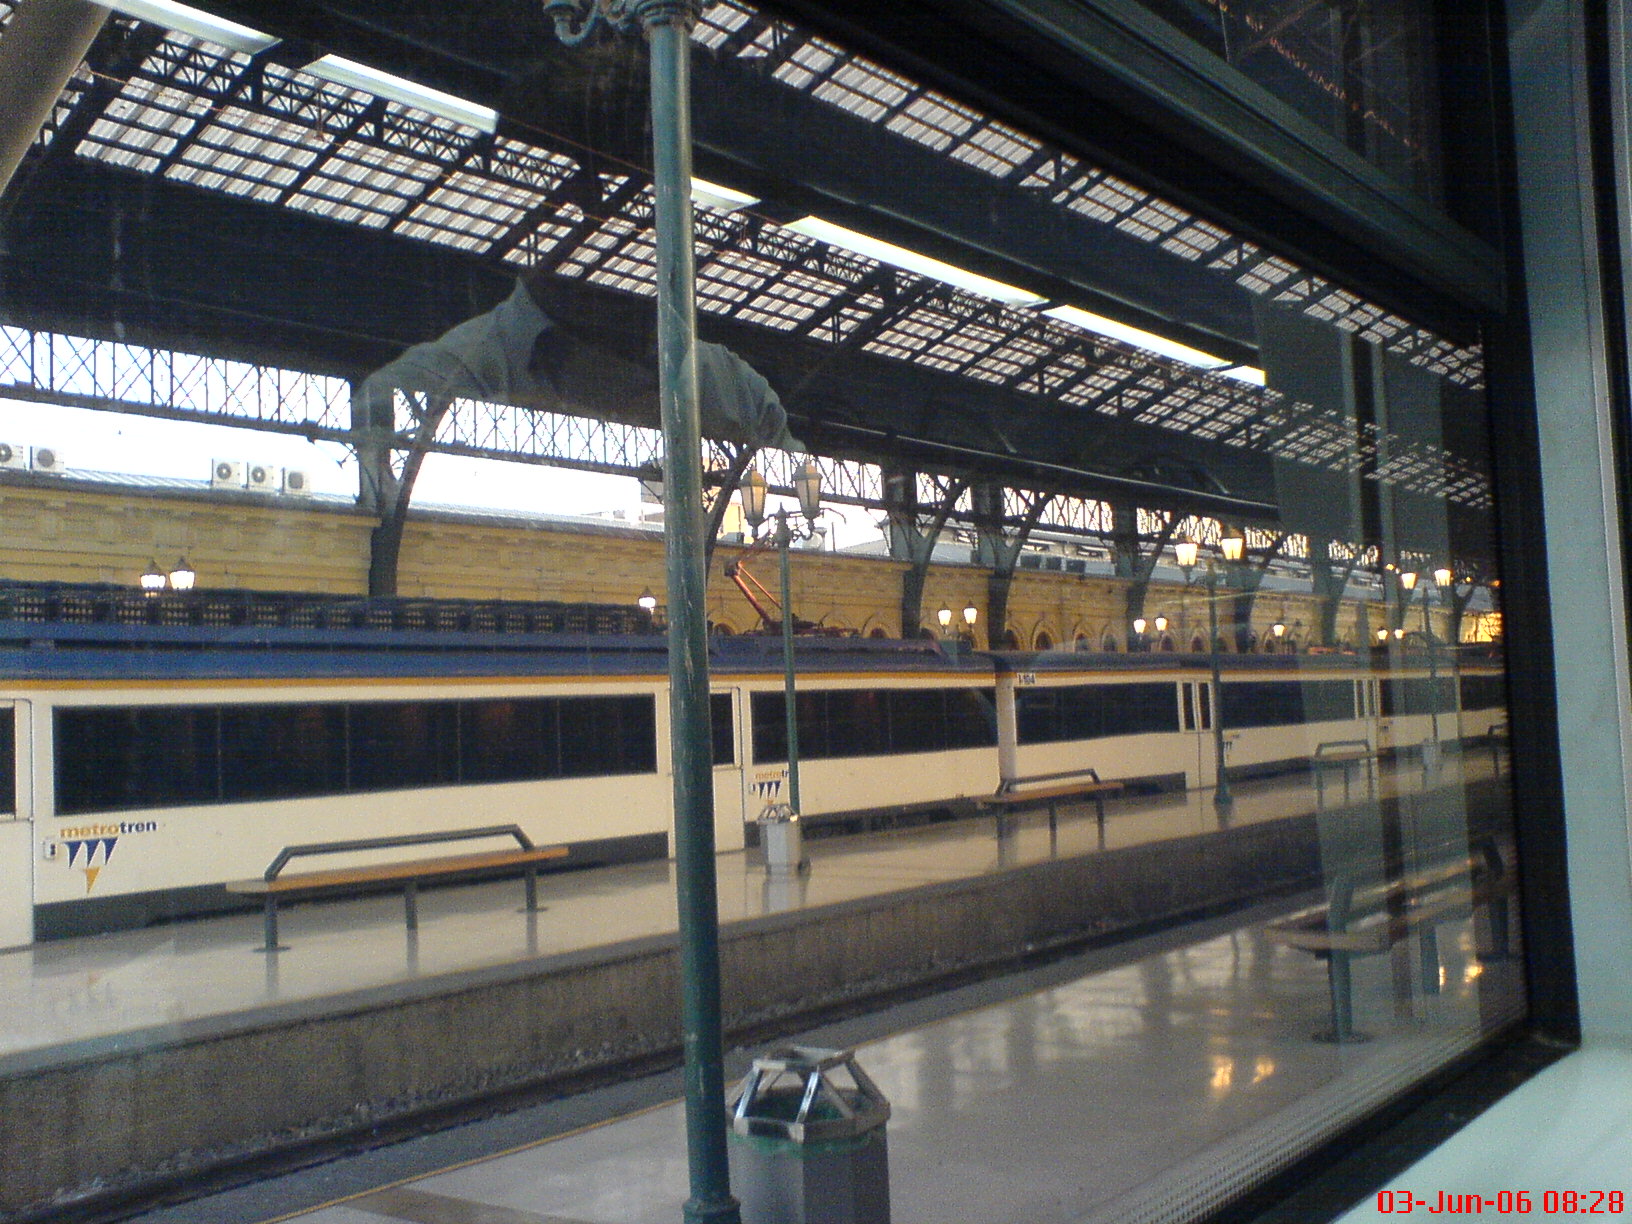 Vistazo a la estación central desde el interior del tren